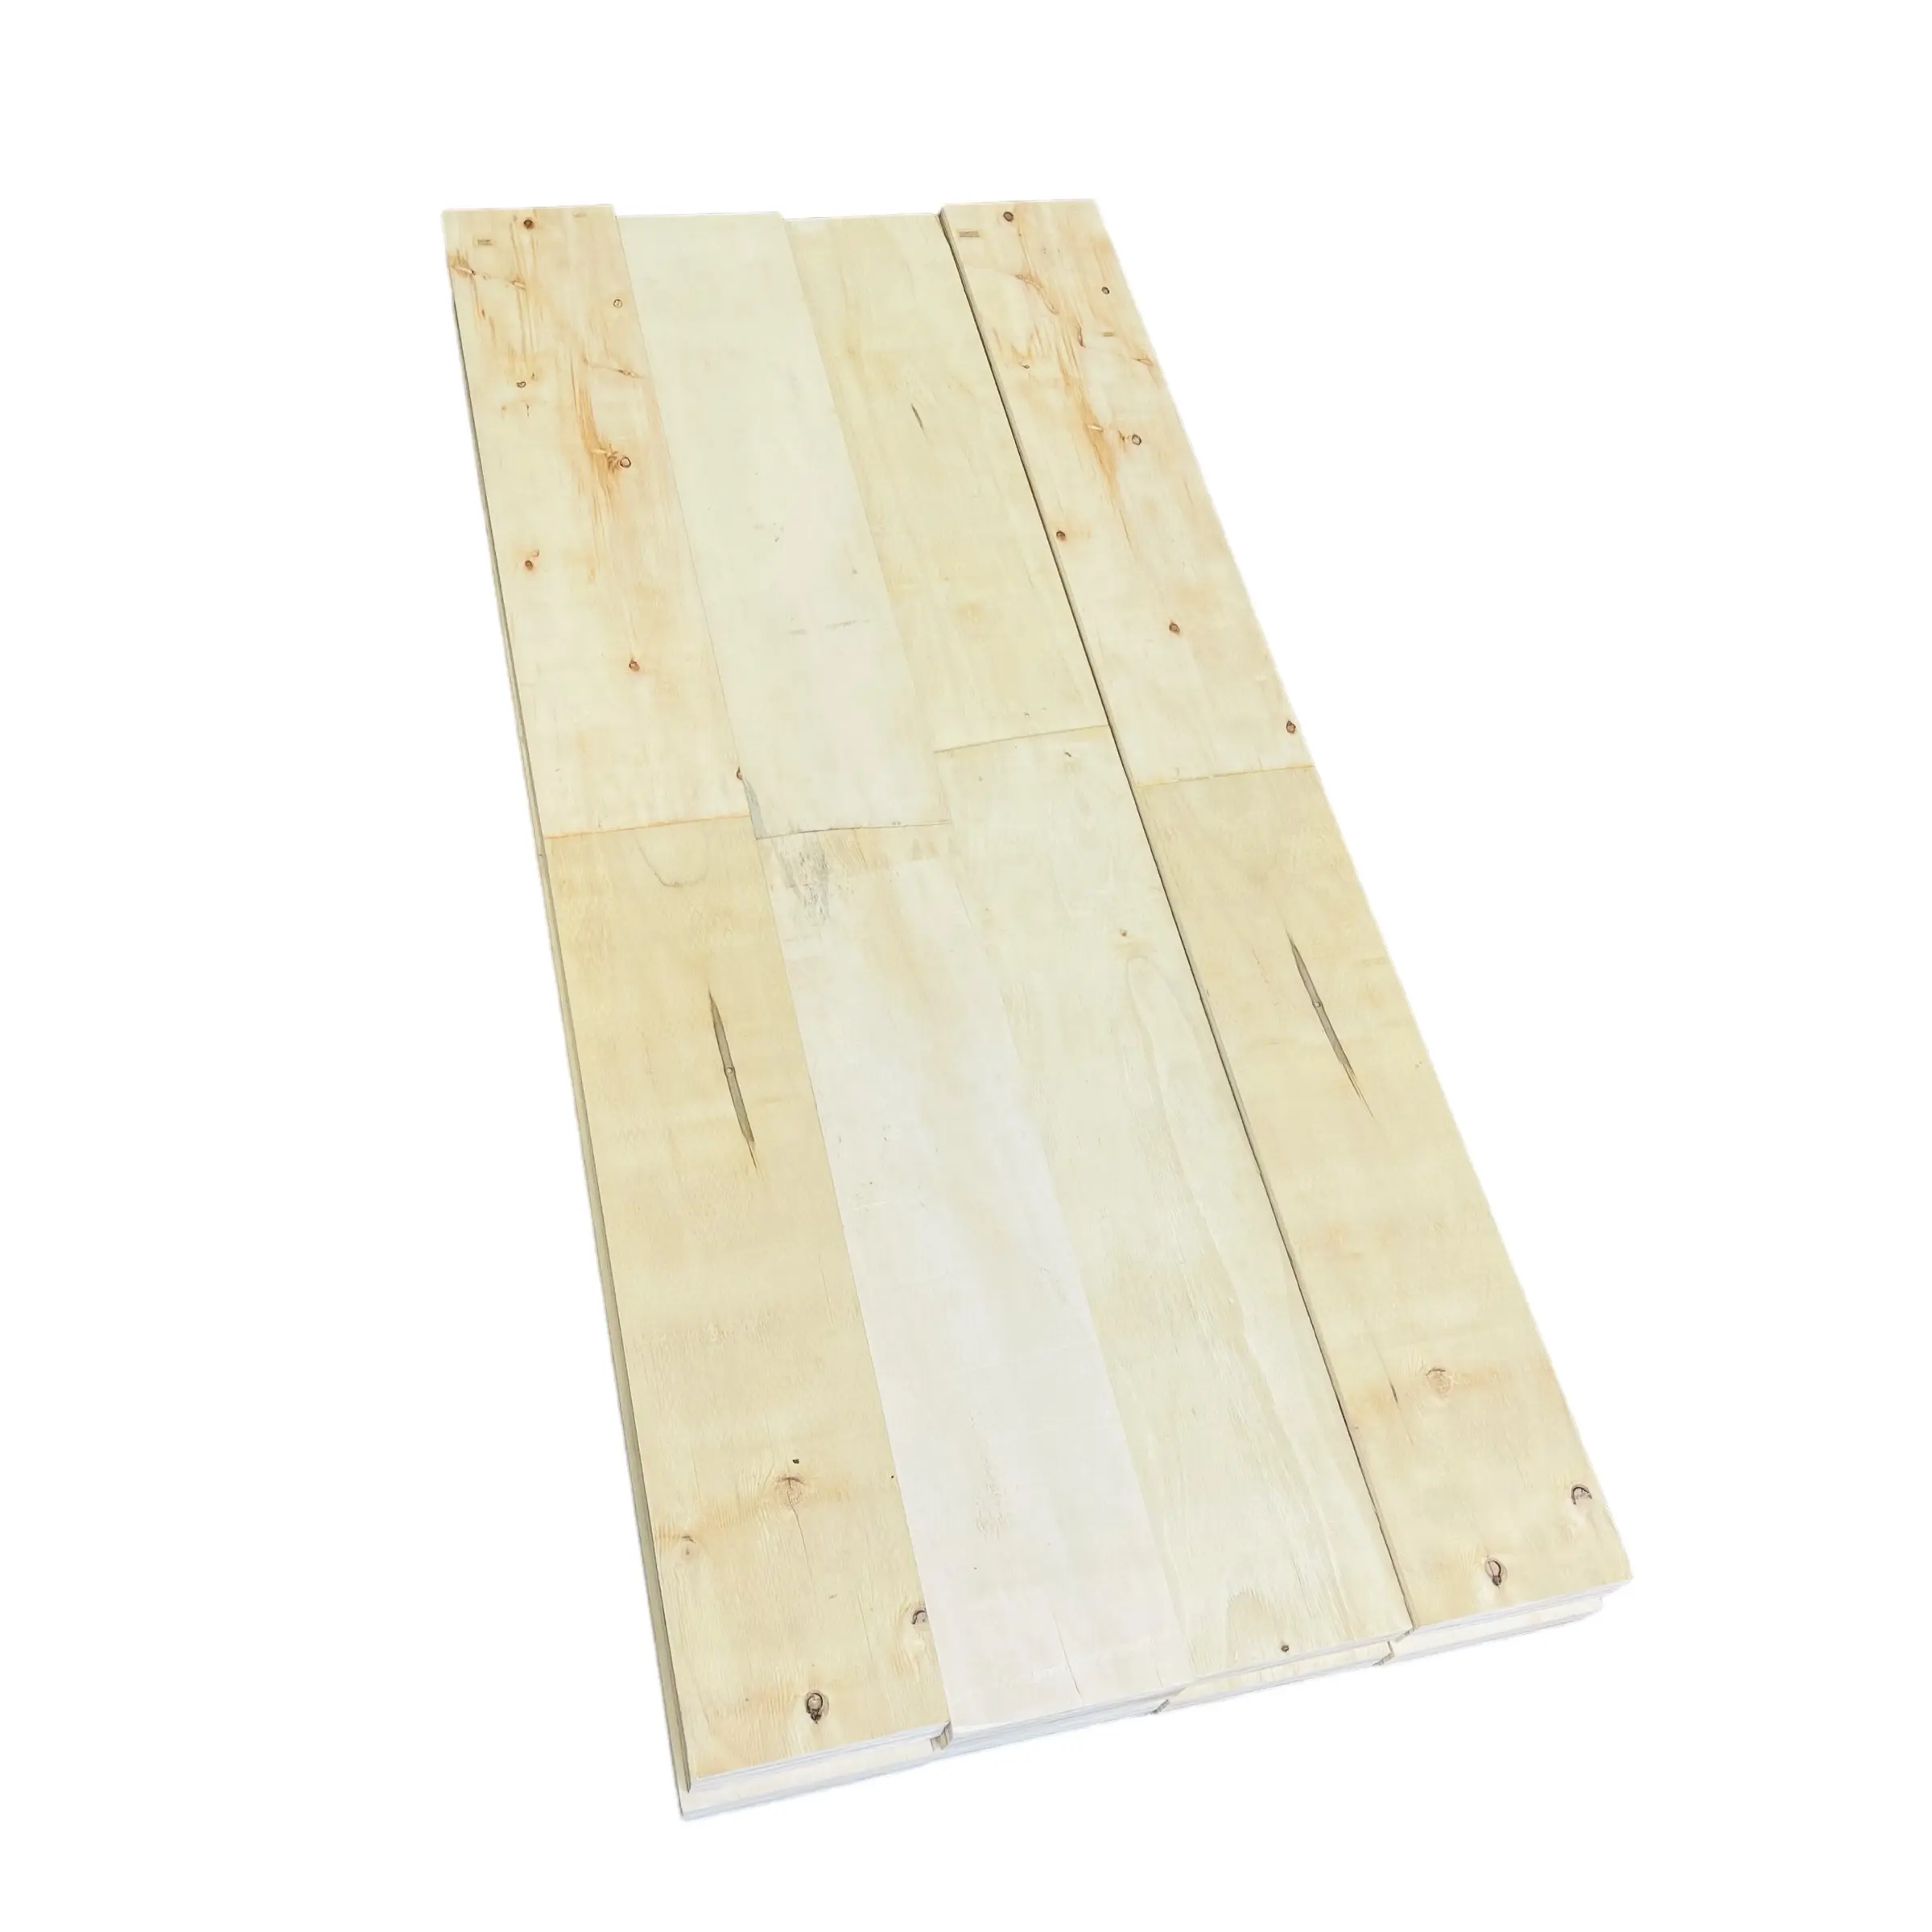 Gut Wählen Sie haltbare Hartholz böden Playwood Marine Sperrholz Film Sperrholz herstellungs maschinen Made In Vietnam Hersteller